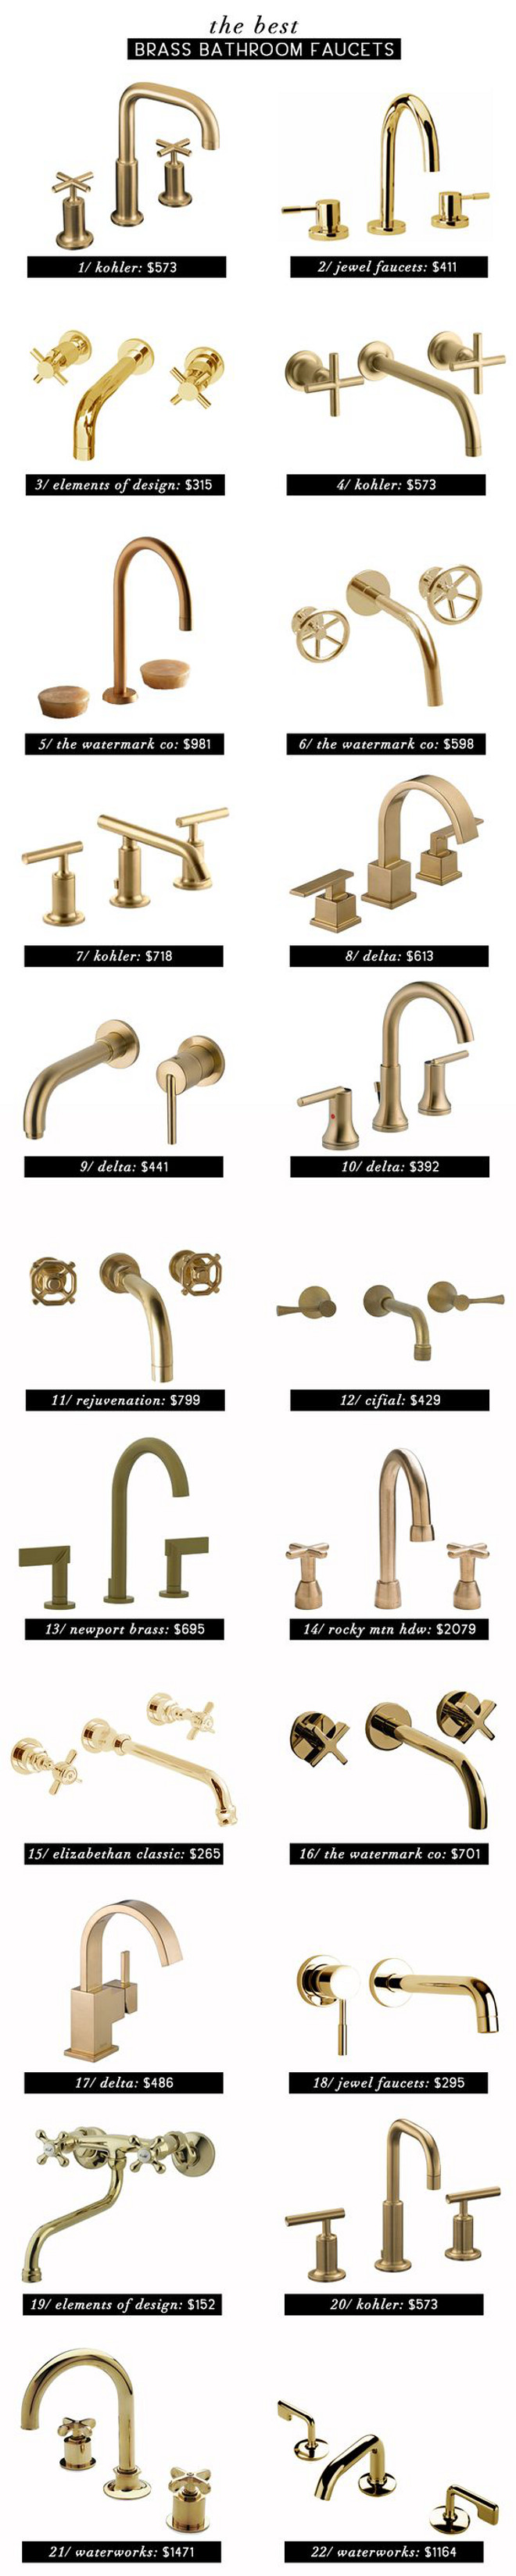 Best Brass Faucets. Bathroom Brass Faucets. Bathroom Brass Faucets Ideas. List of Bathroom Brass Faucets. List of Brass Faucets with price. #BathroomBrassFaucets #Faucets #BrassFaucets Via Emily Henderson